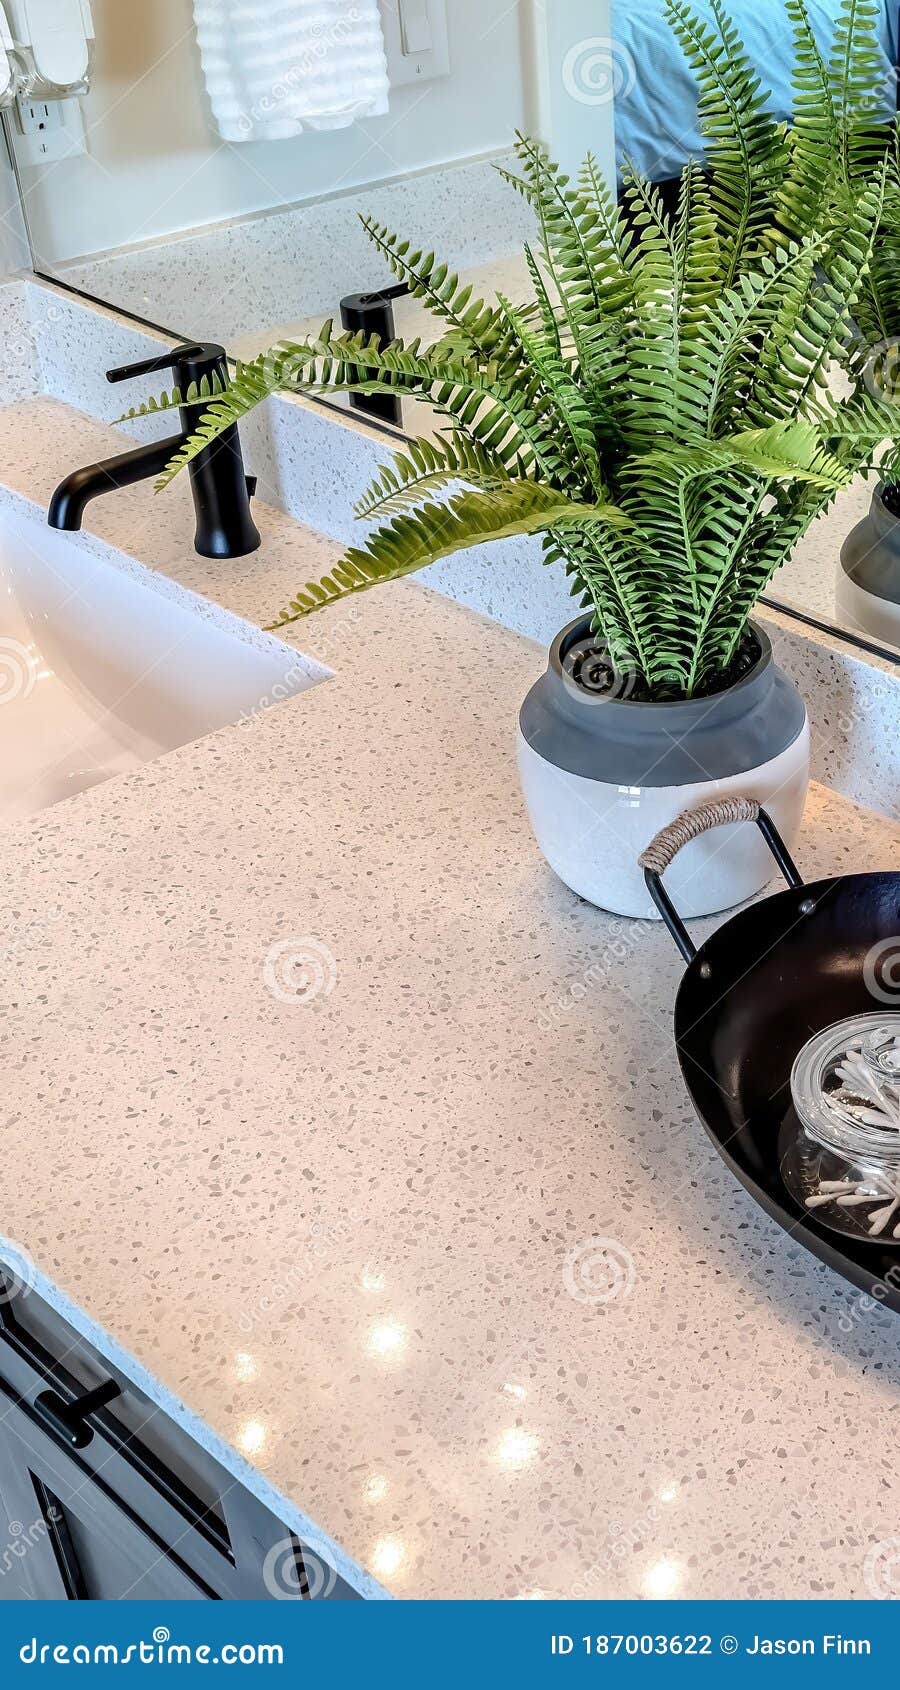 立式作物盆栽蕨类植物和在两个水槽之间装有罐子的托盘 两个水槽上有黑色水龙头库存照片 图片包括有虚荣 蕨类